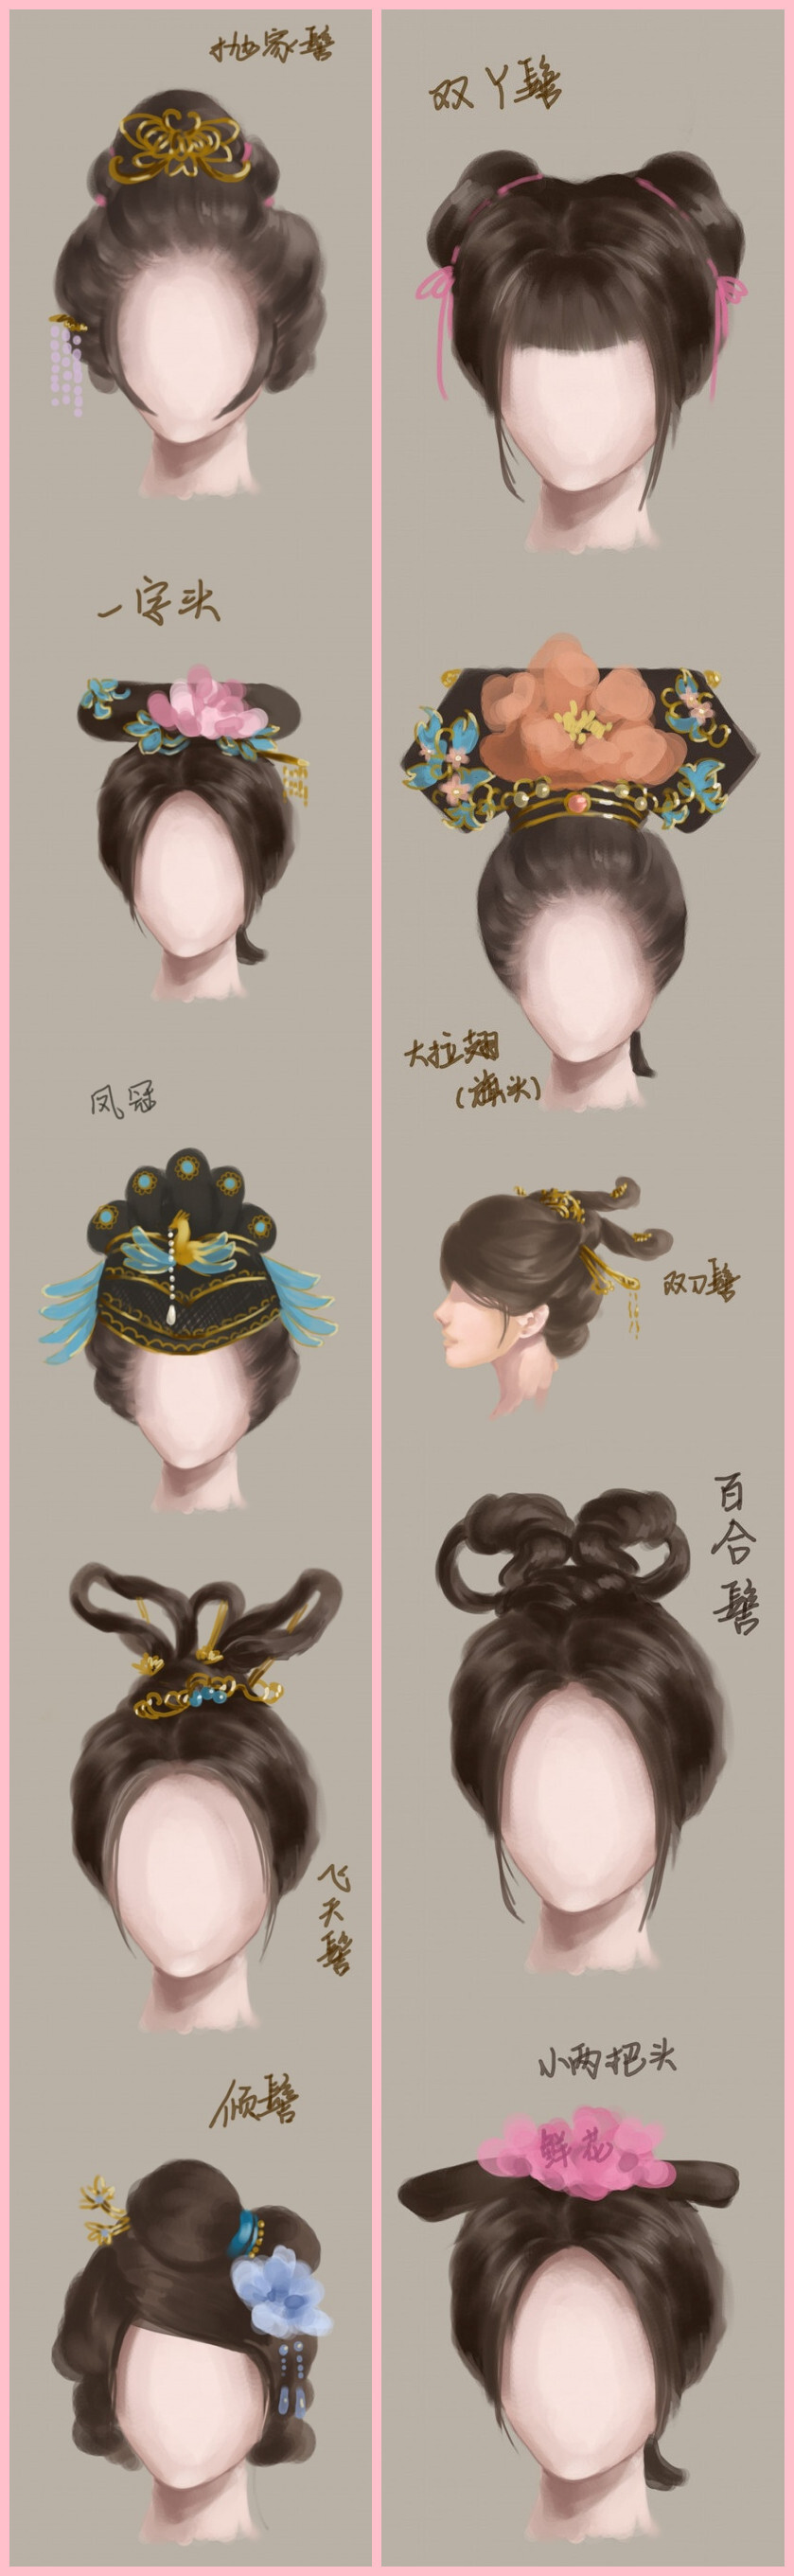 古代发型简单的梳法女_超级简单古代发型梳法_儿童古代发型简单梳法